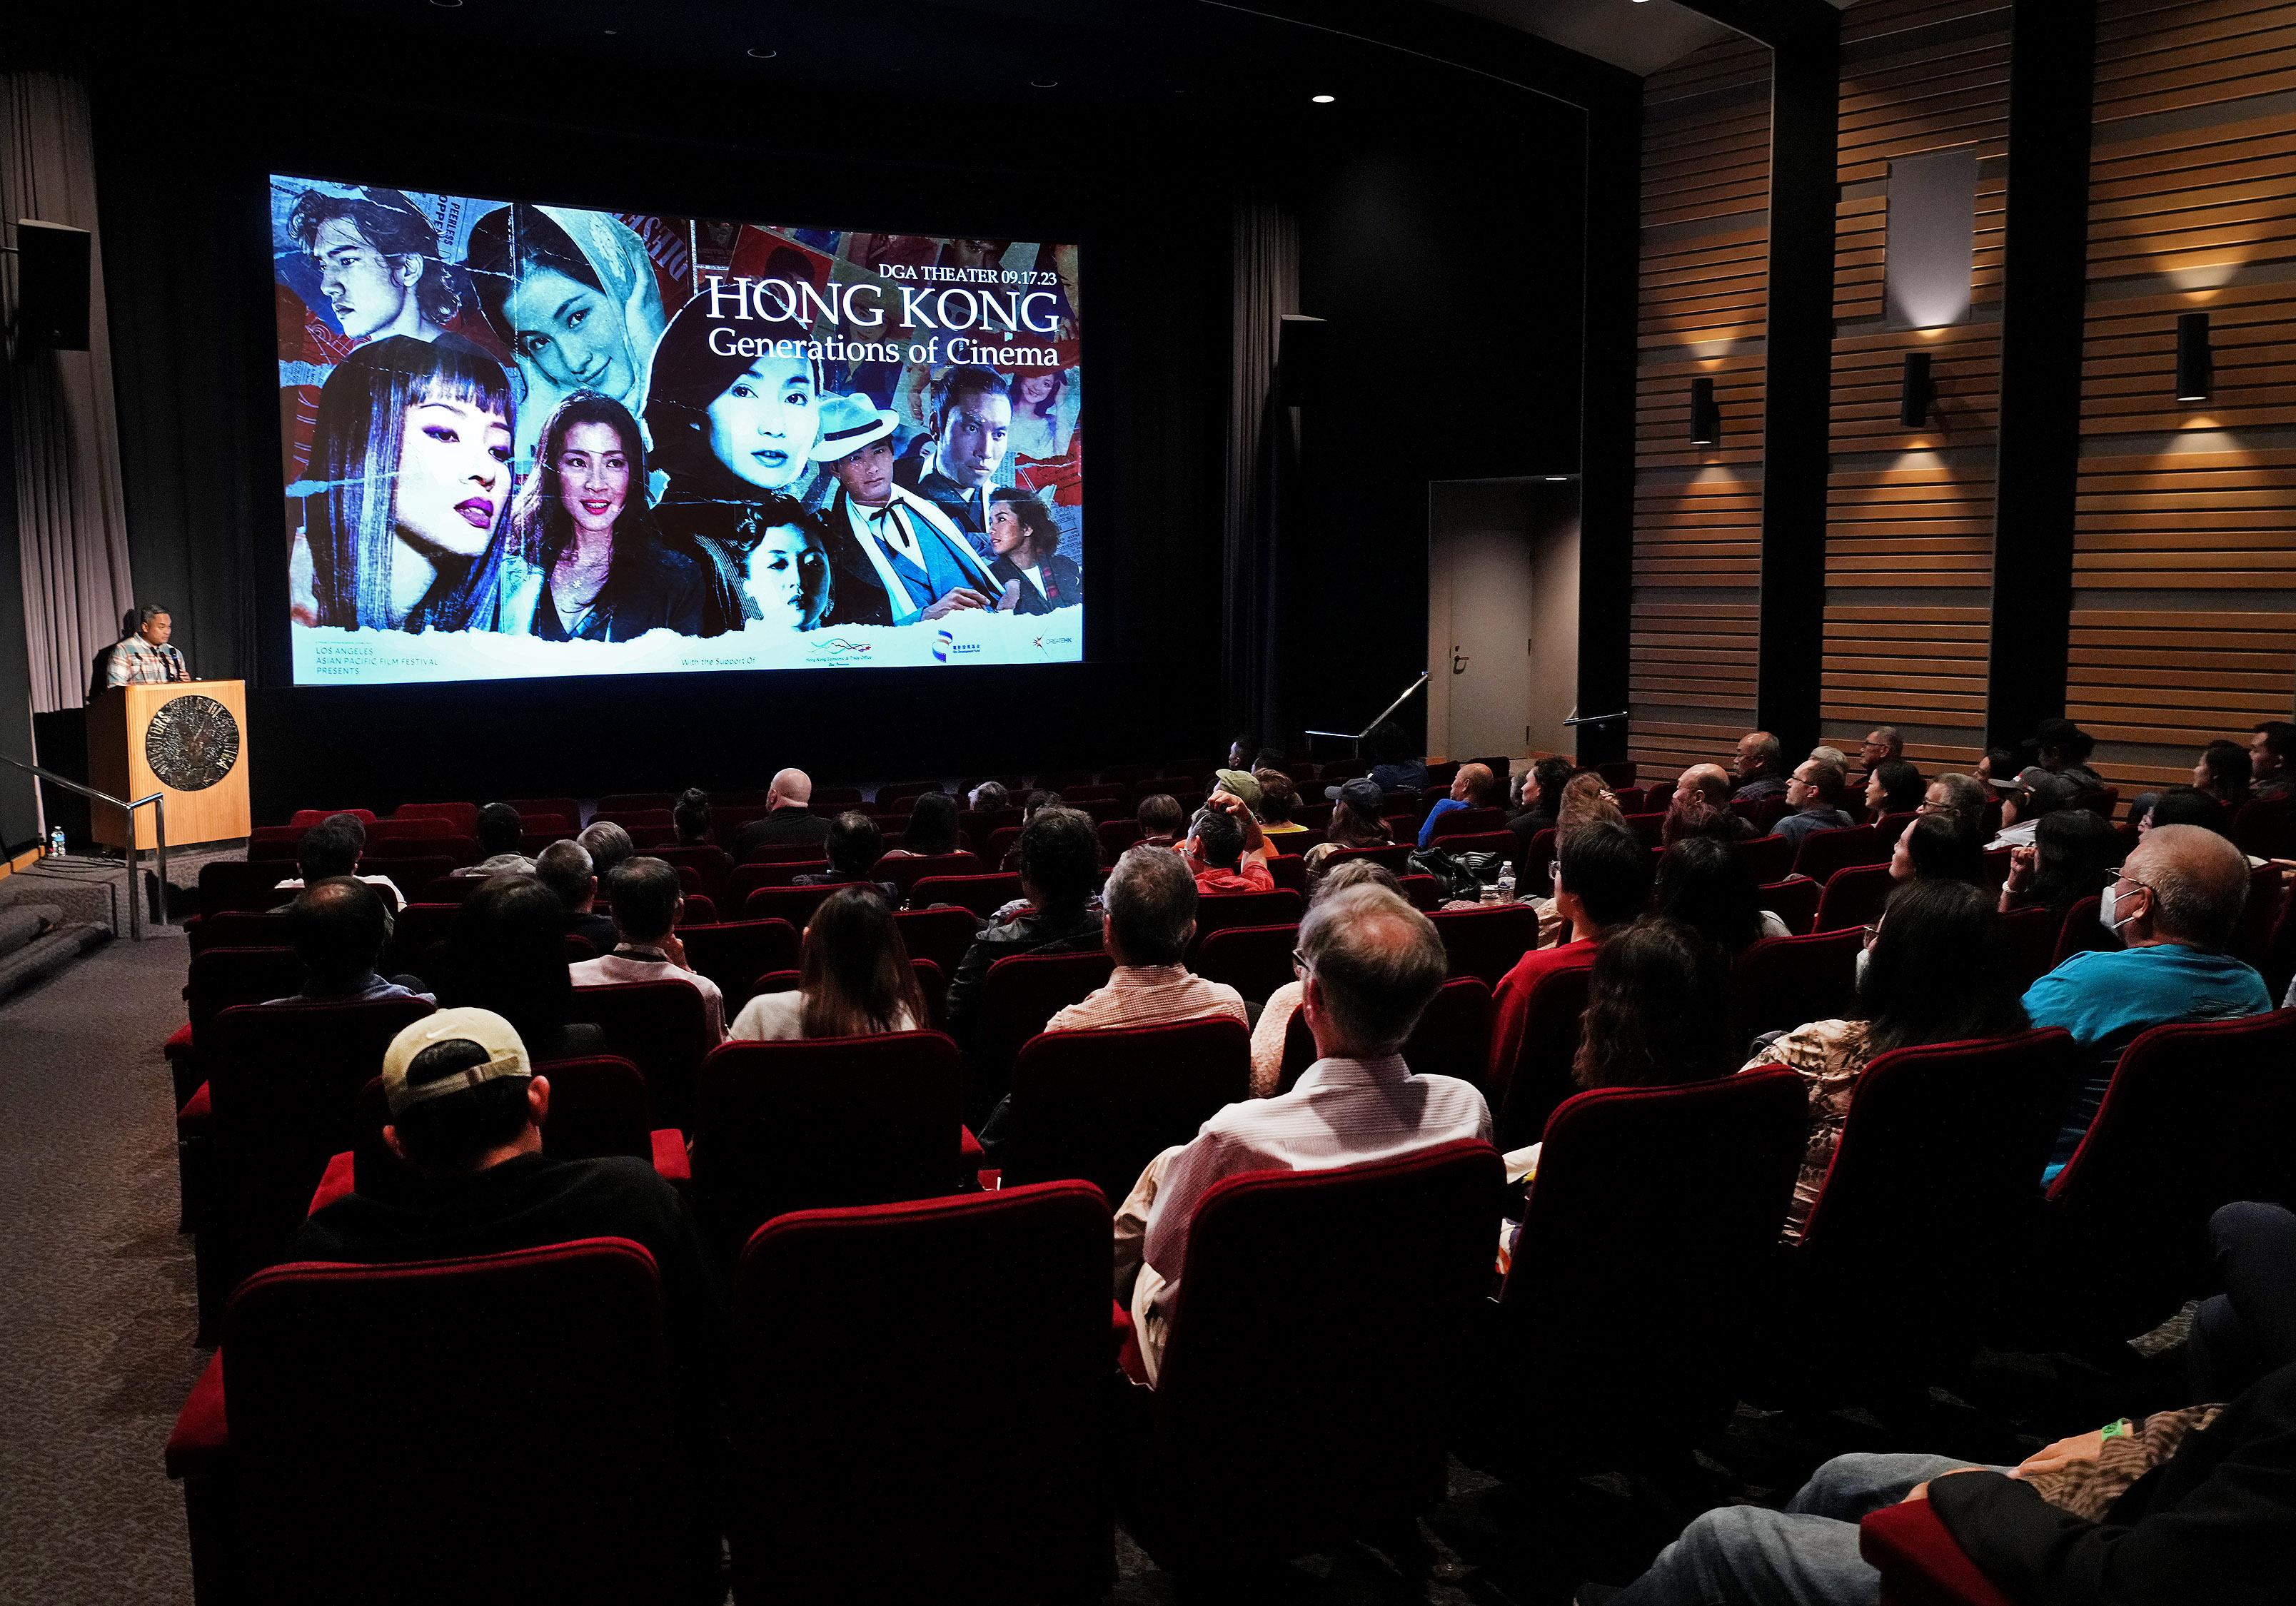 香港驻三藩市经济贸易办事处于九月十七日（洛杉矶时间）连续两年赞助「洛杉矶亚太电影节呈献：香港电影年代」。影展受洛杉矶电影爱好者及当地港人社群的热烈欢迎。
